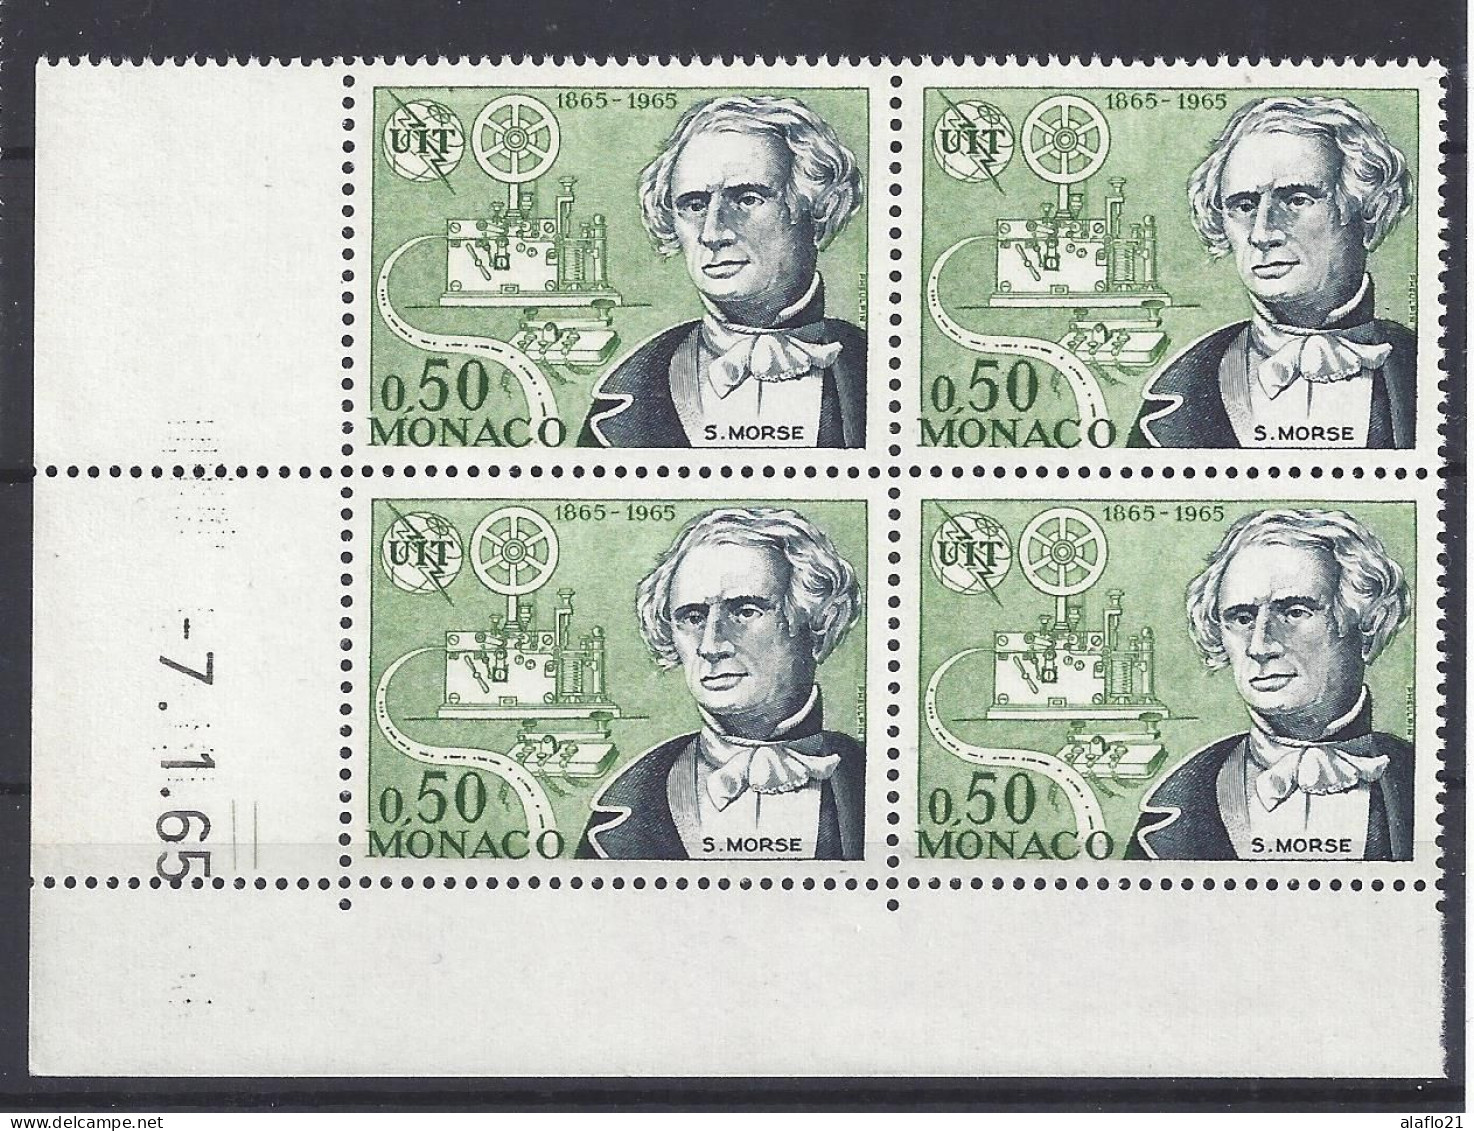 MONACO - N° 670 - CENTENAIRE De L'U.I.T. - Bloc De 4 COIN DATE - NEUF SANS CHARNIERE - 7/1/65 - Unused Stamps